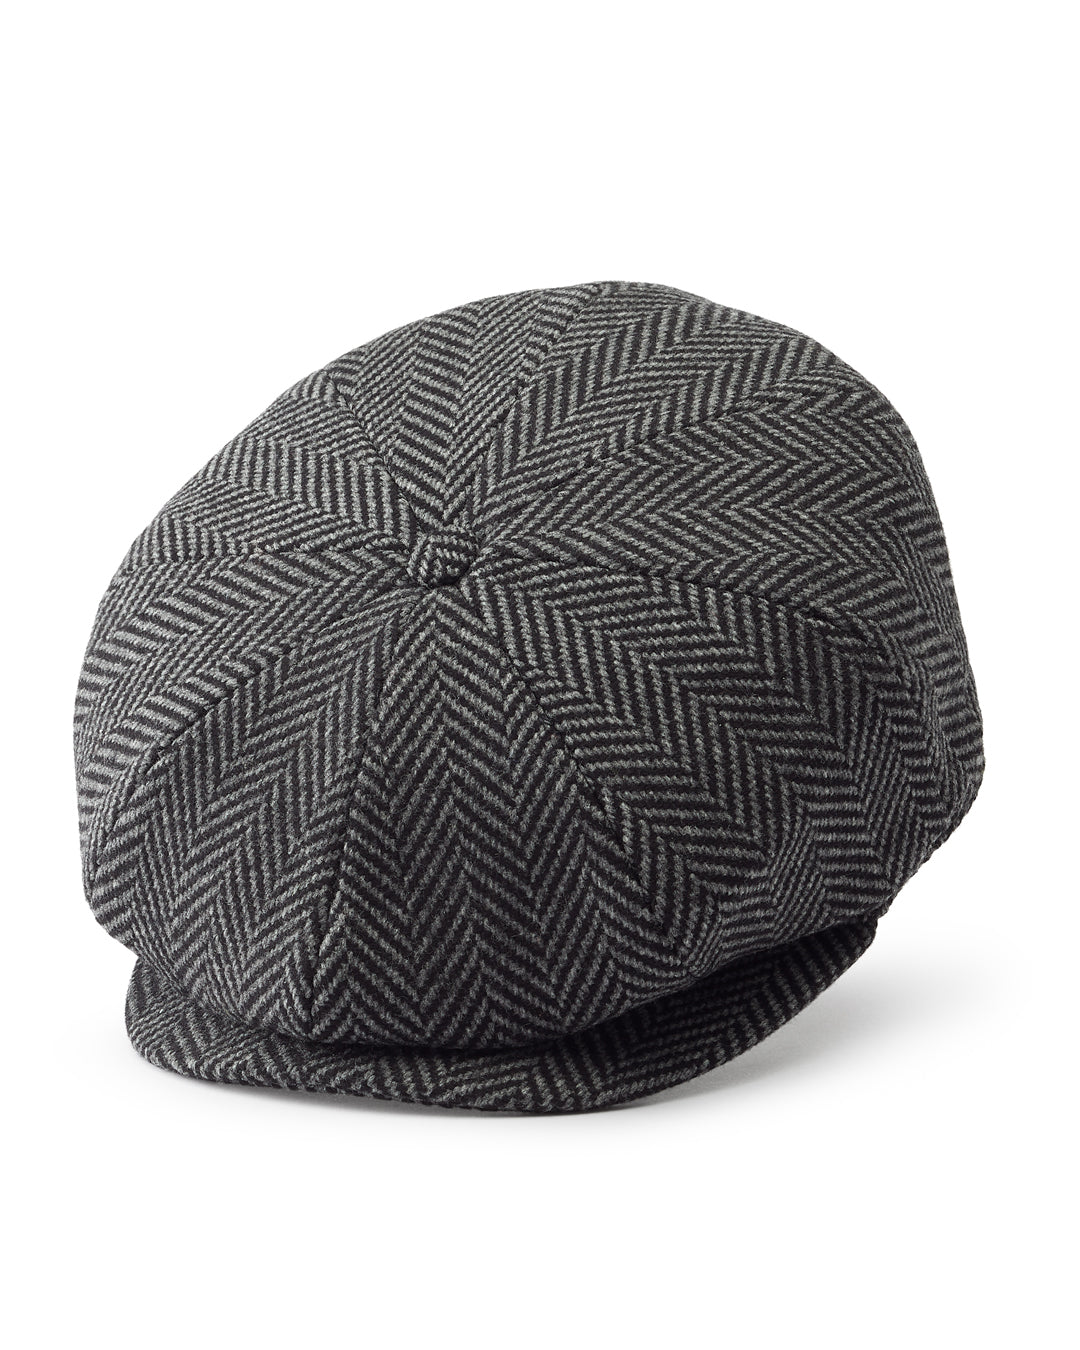 Lock & Co Escorial Wool Tremelo Baker Boy Hat